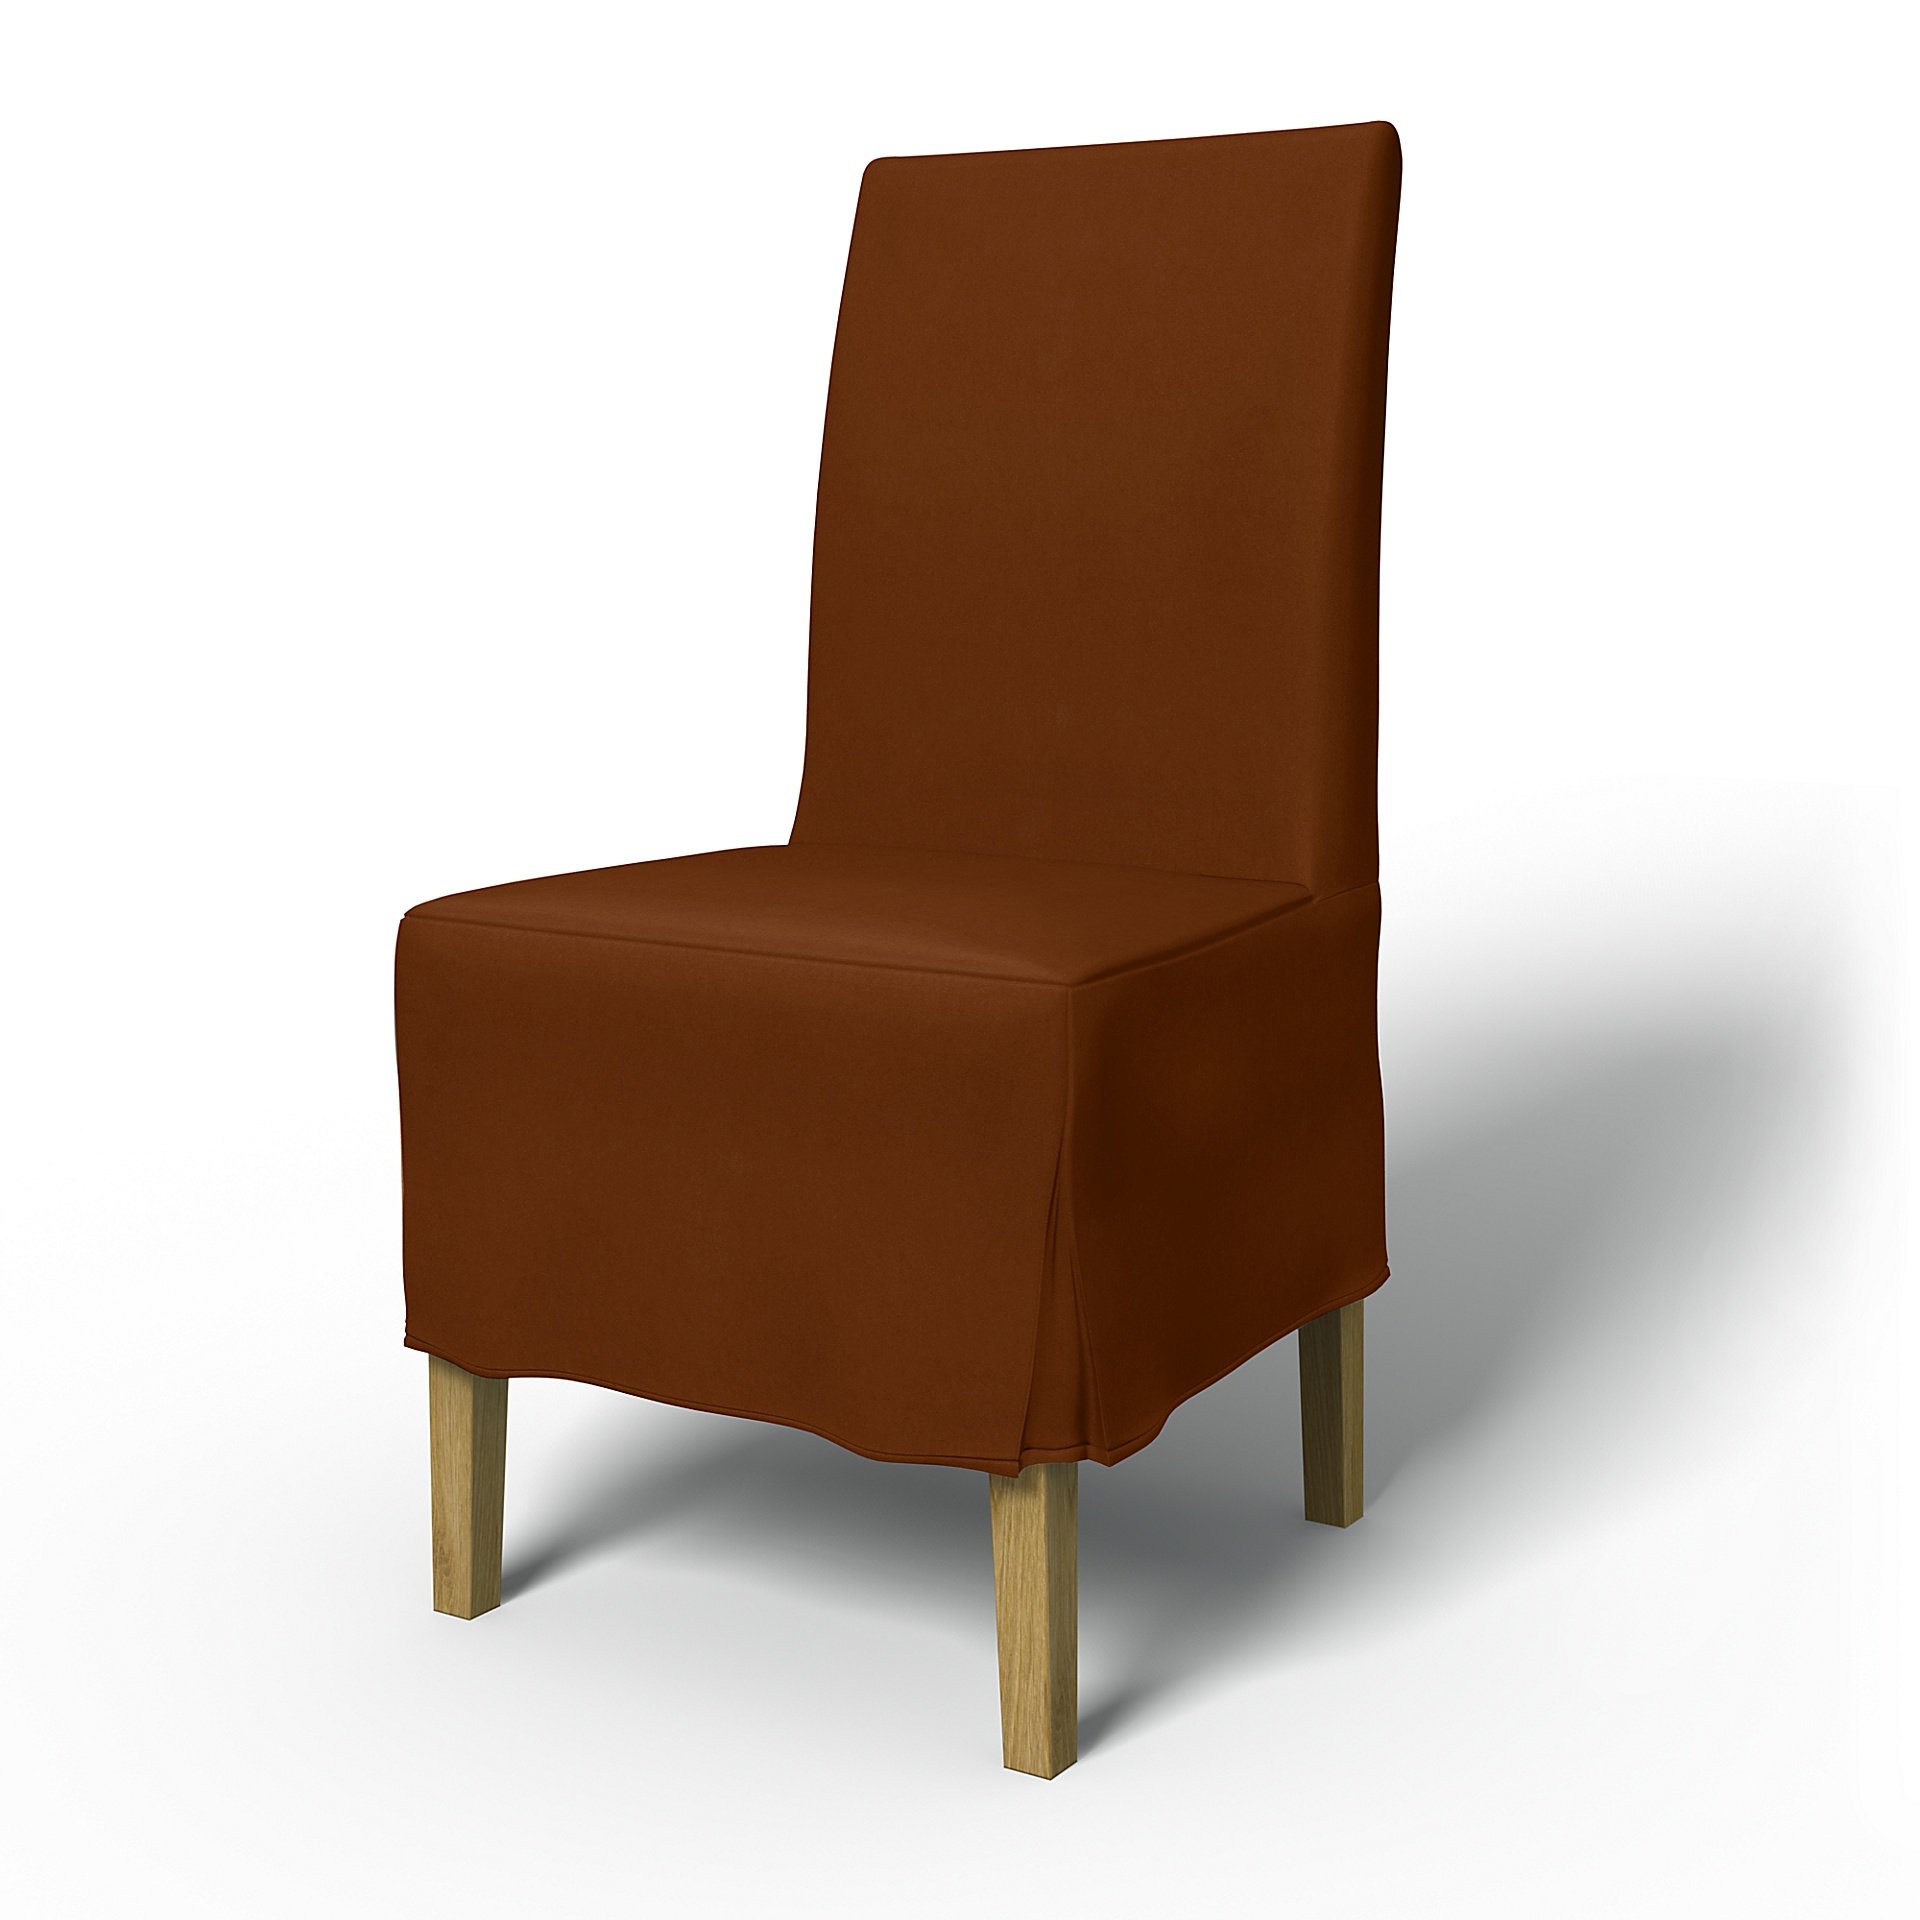 IKEA - Henriksdal Dining Chair Cover Medium skirt with Box Pleat (Standard model), Cinnamon, Velvet 